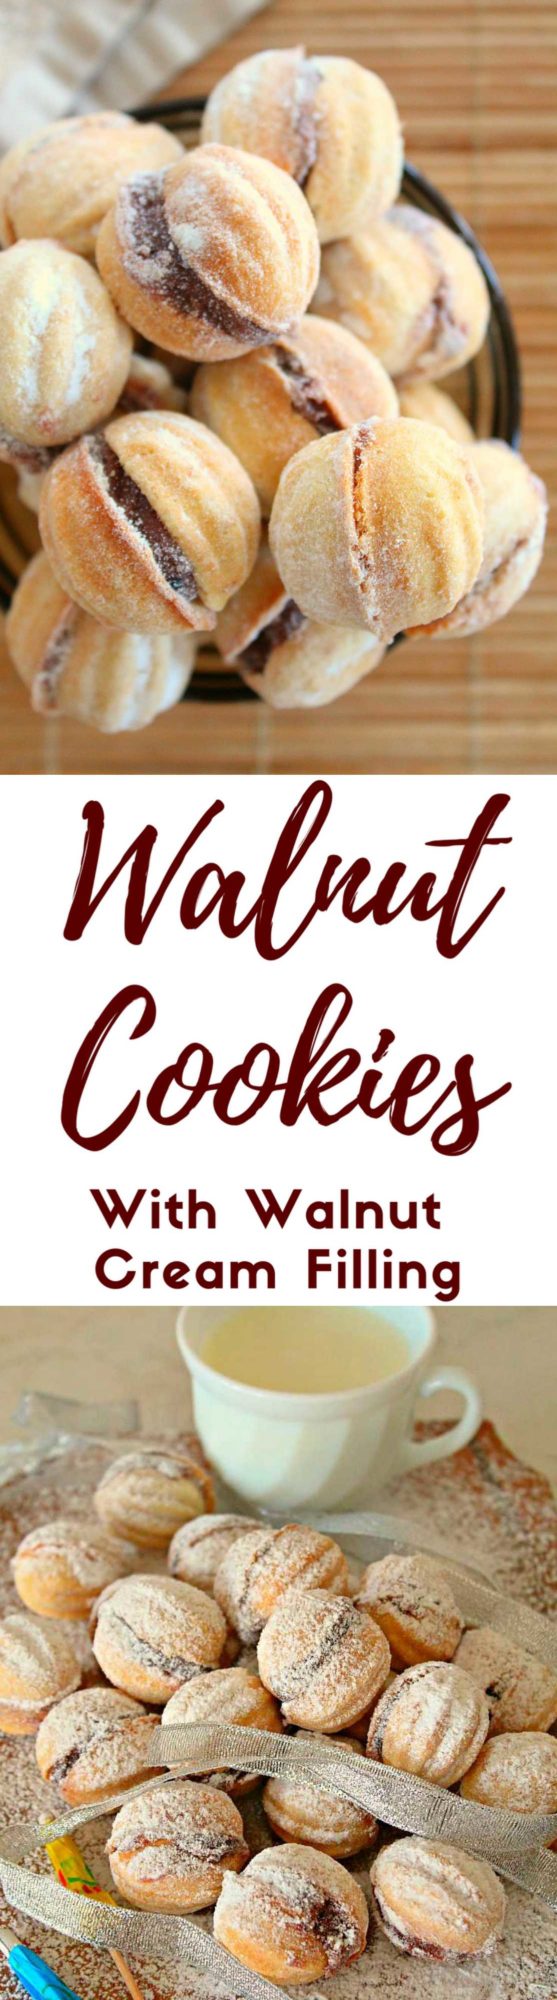 Walnut shaped cookies